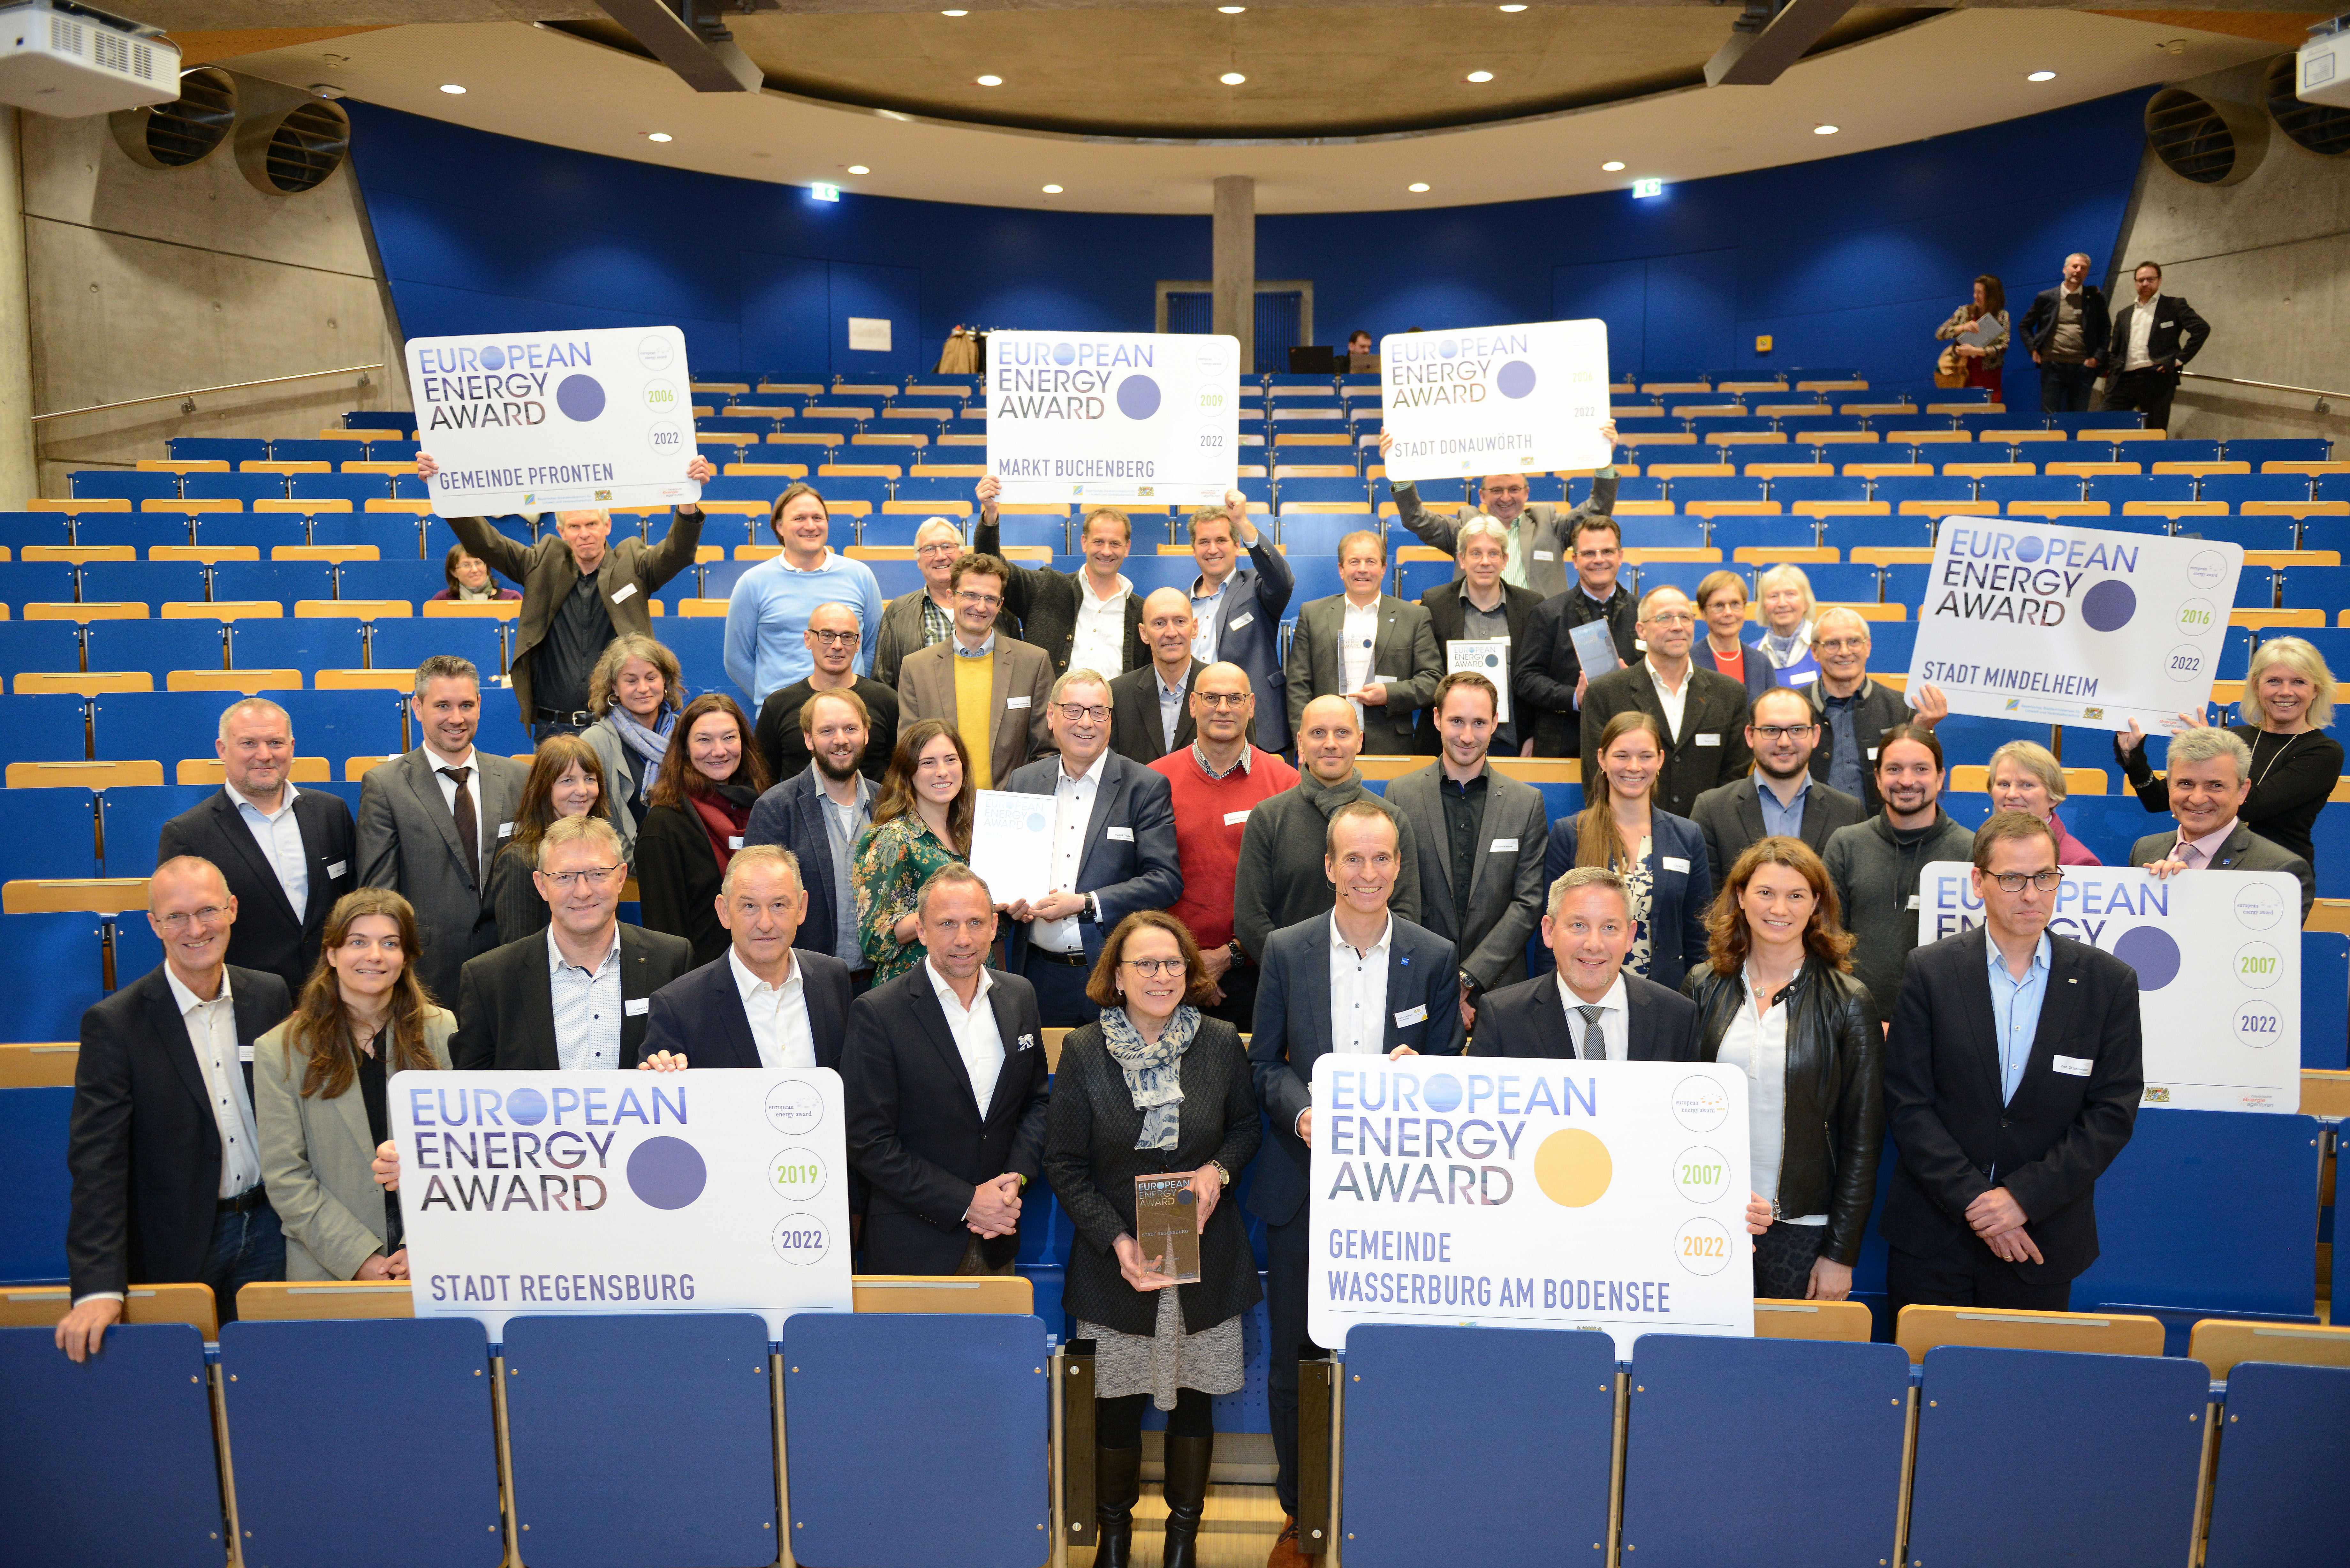 Gruppenbild der Verleihung des European Energy Award 2022; Bild vergrößert sich per Mausklick